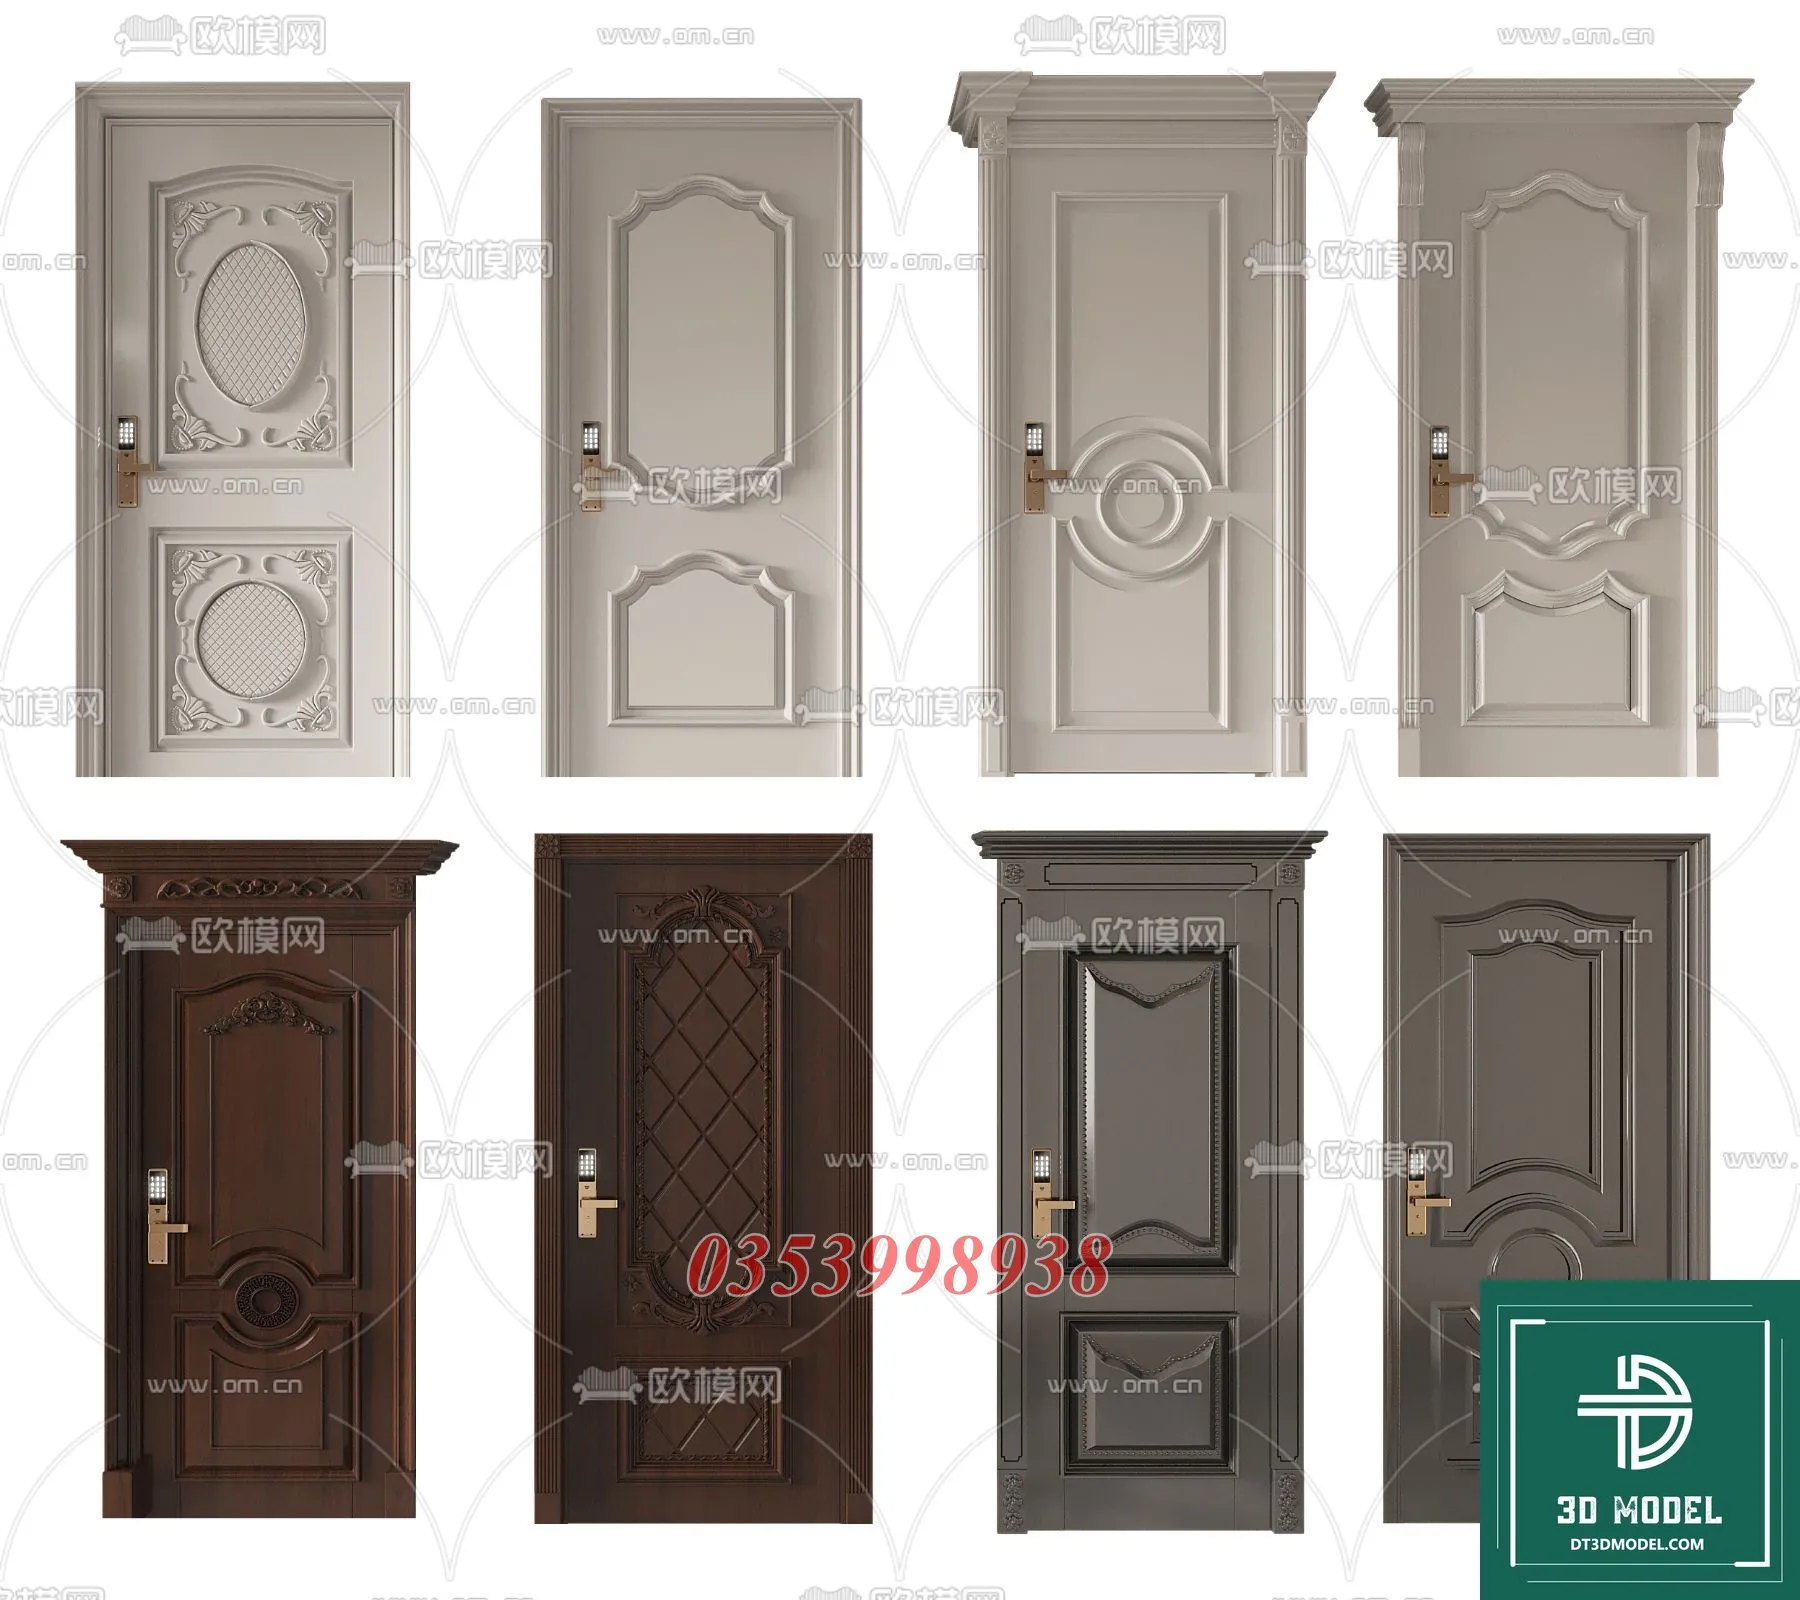 CLASSIC DOOR – 3dsmax MODELS – 093